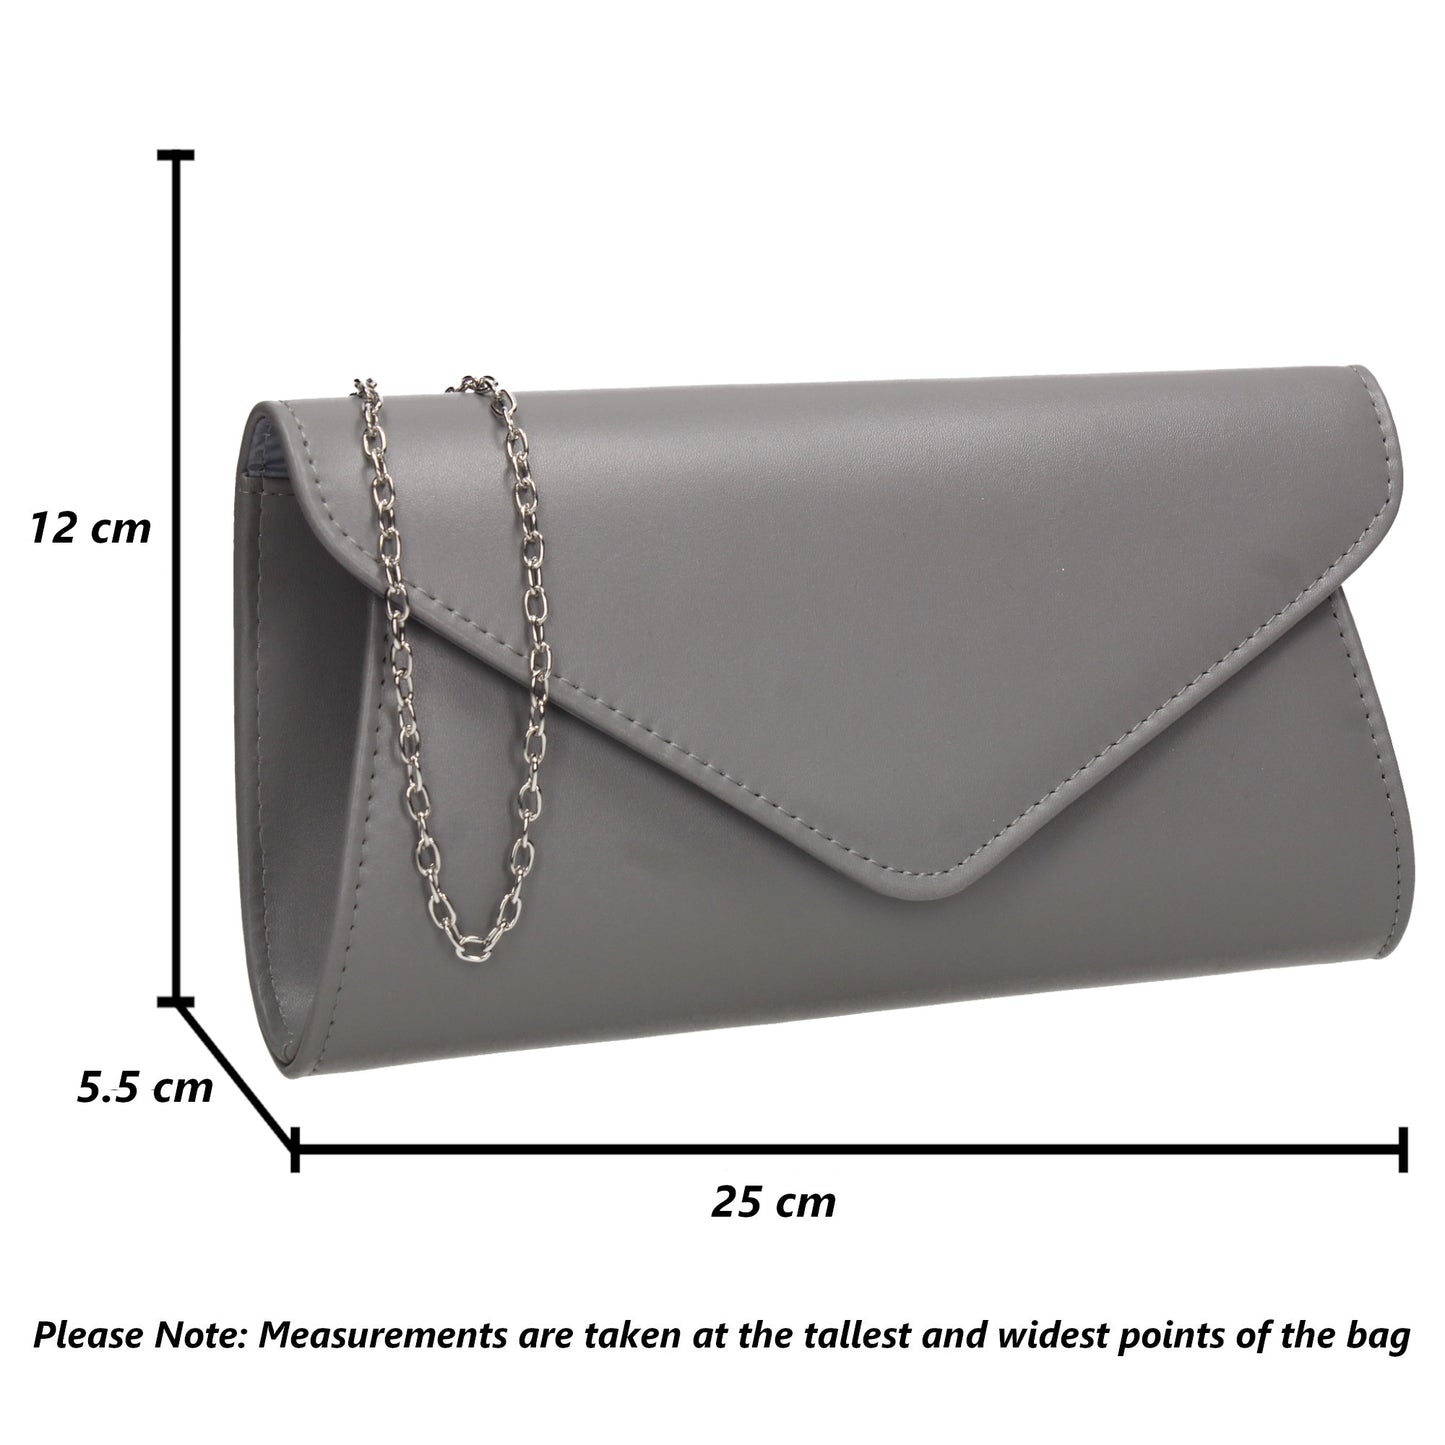 Lora Plain Envelope Clutch Bag Grey